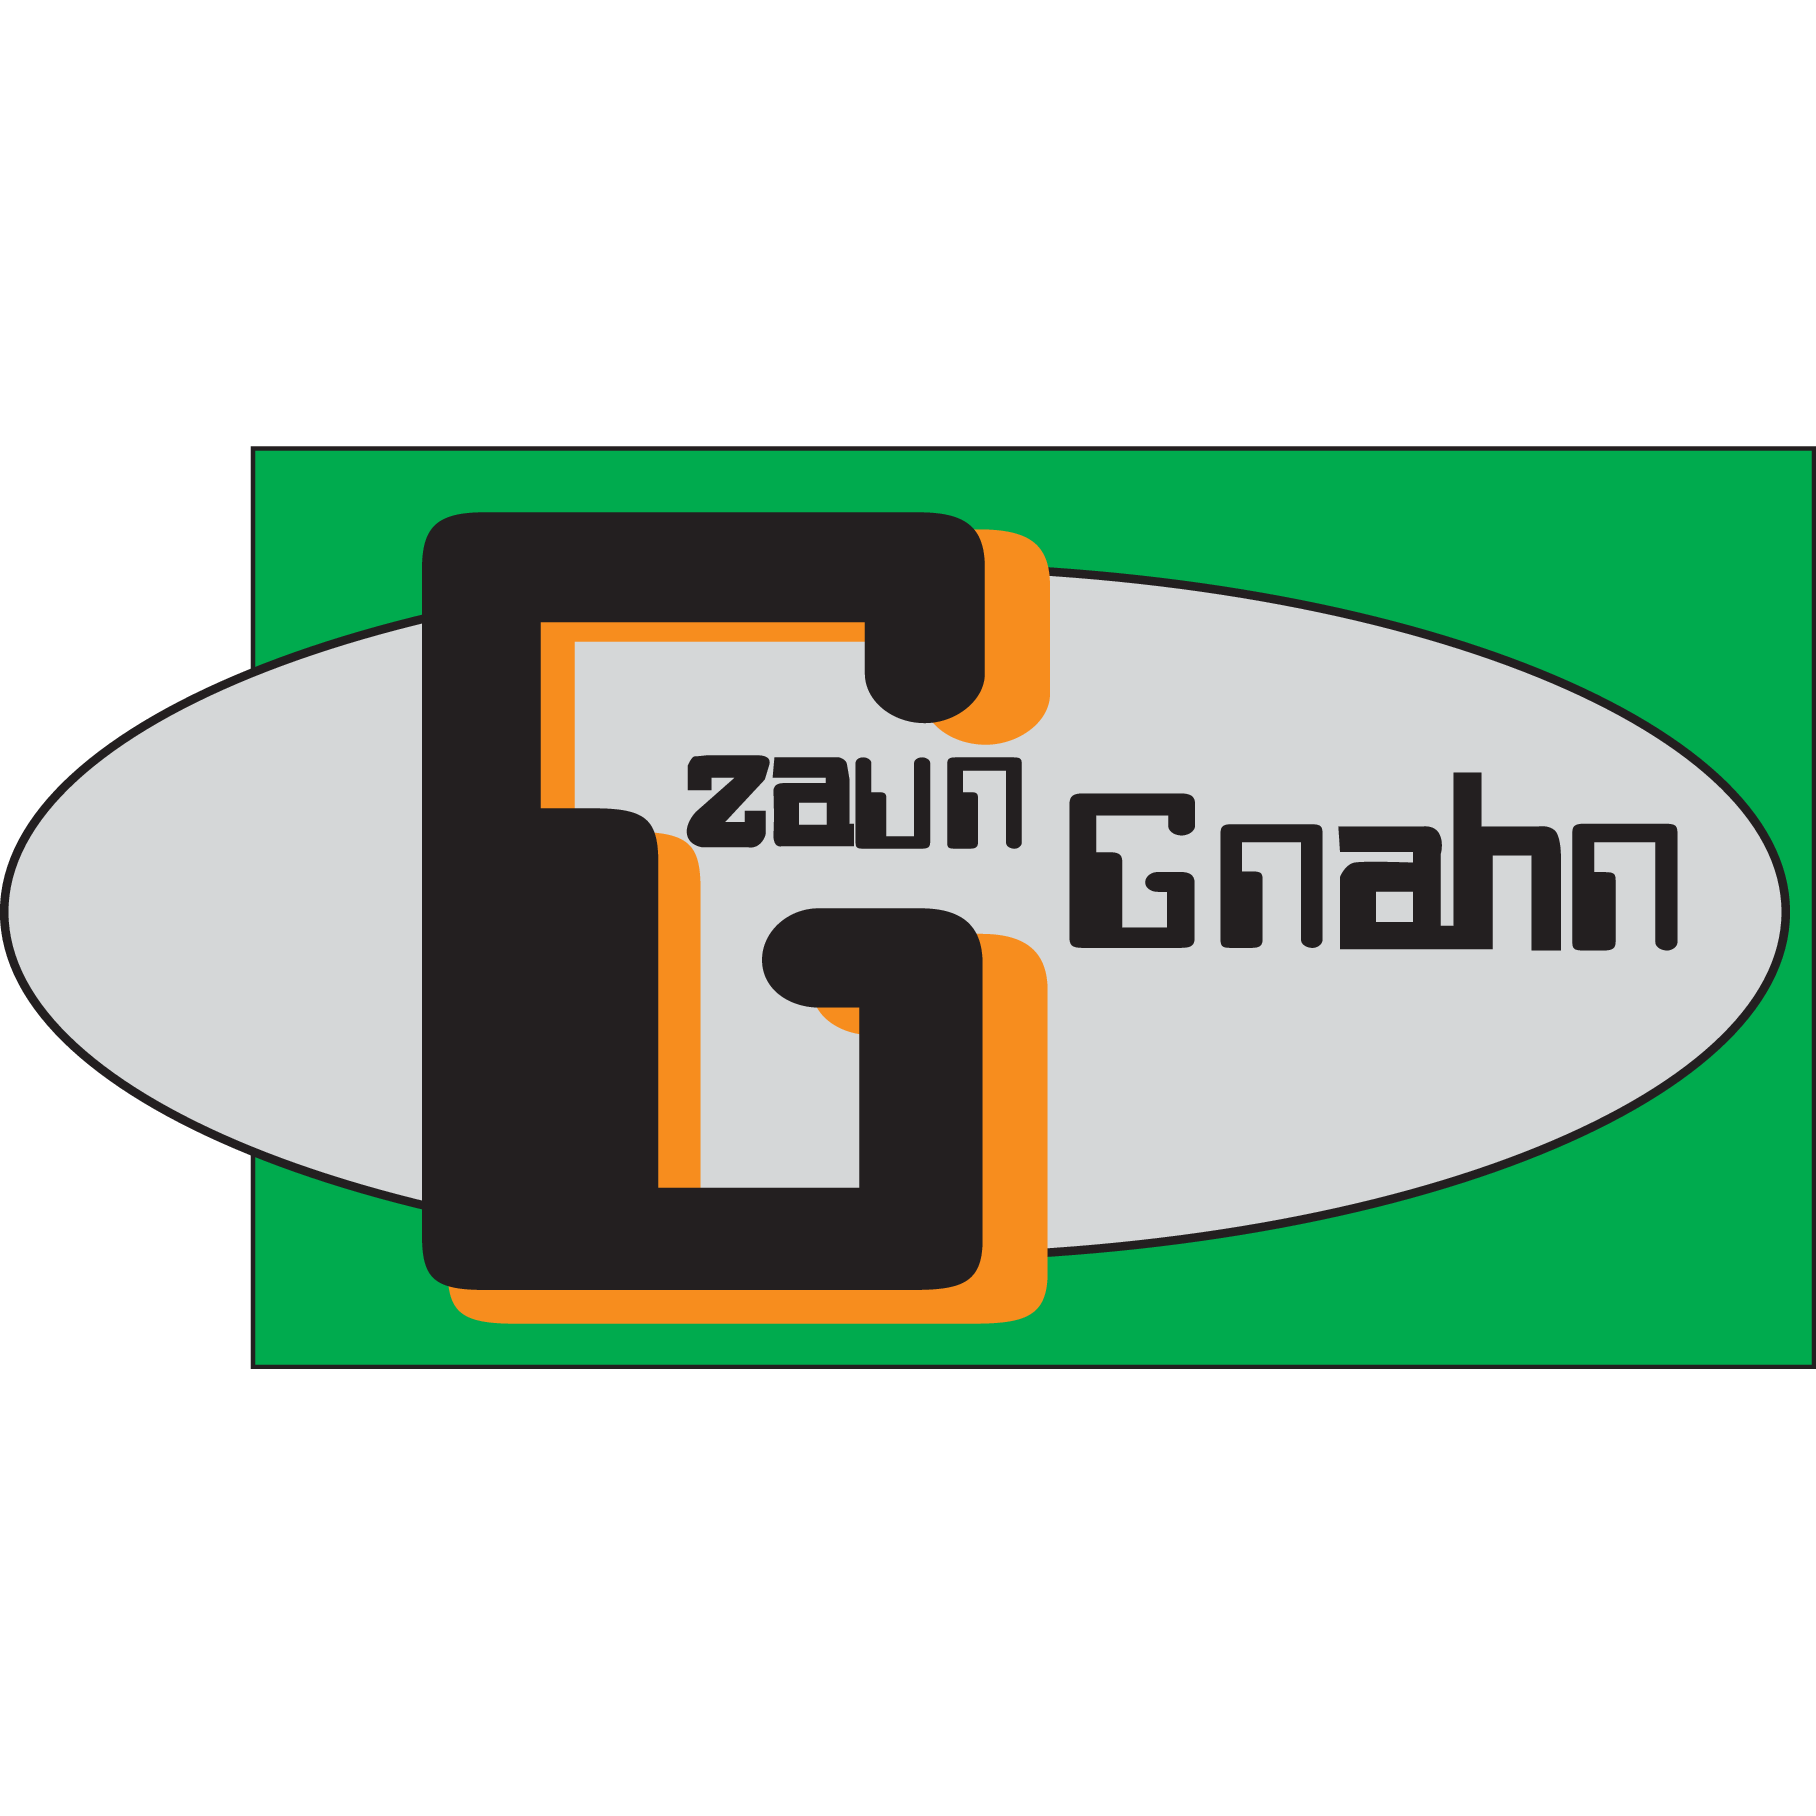 Zaun Gnahn Logo